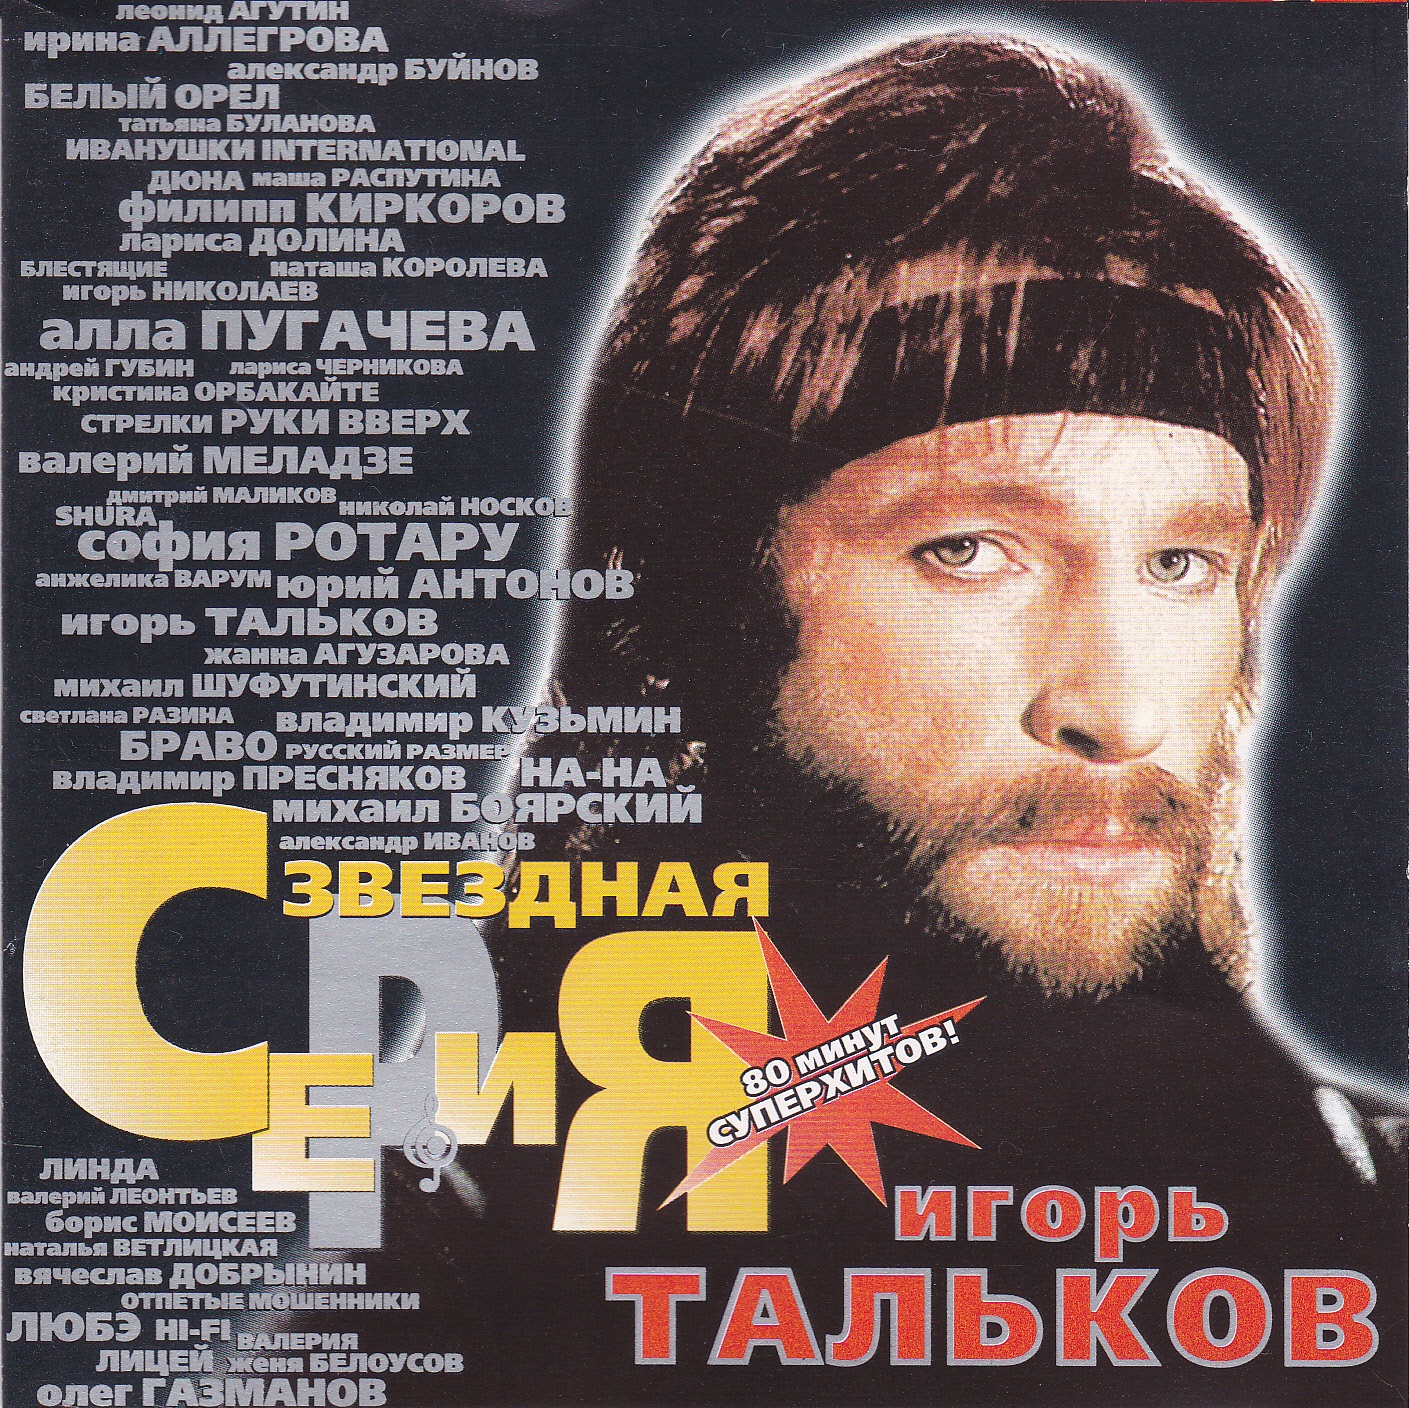 Игорь Тальков - дискография (2001)